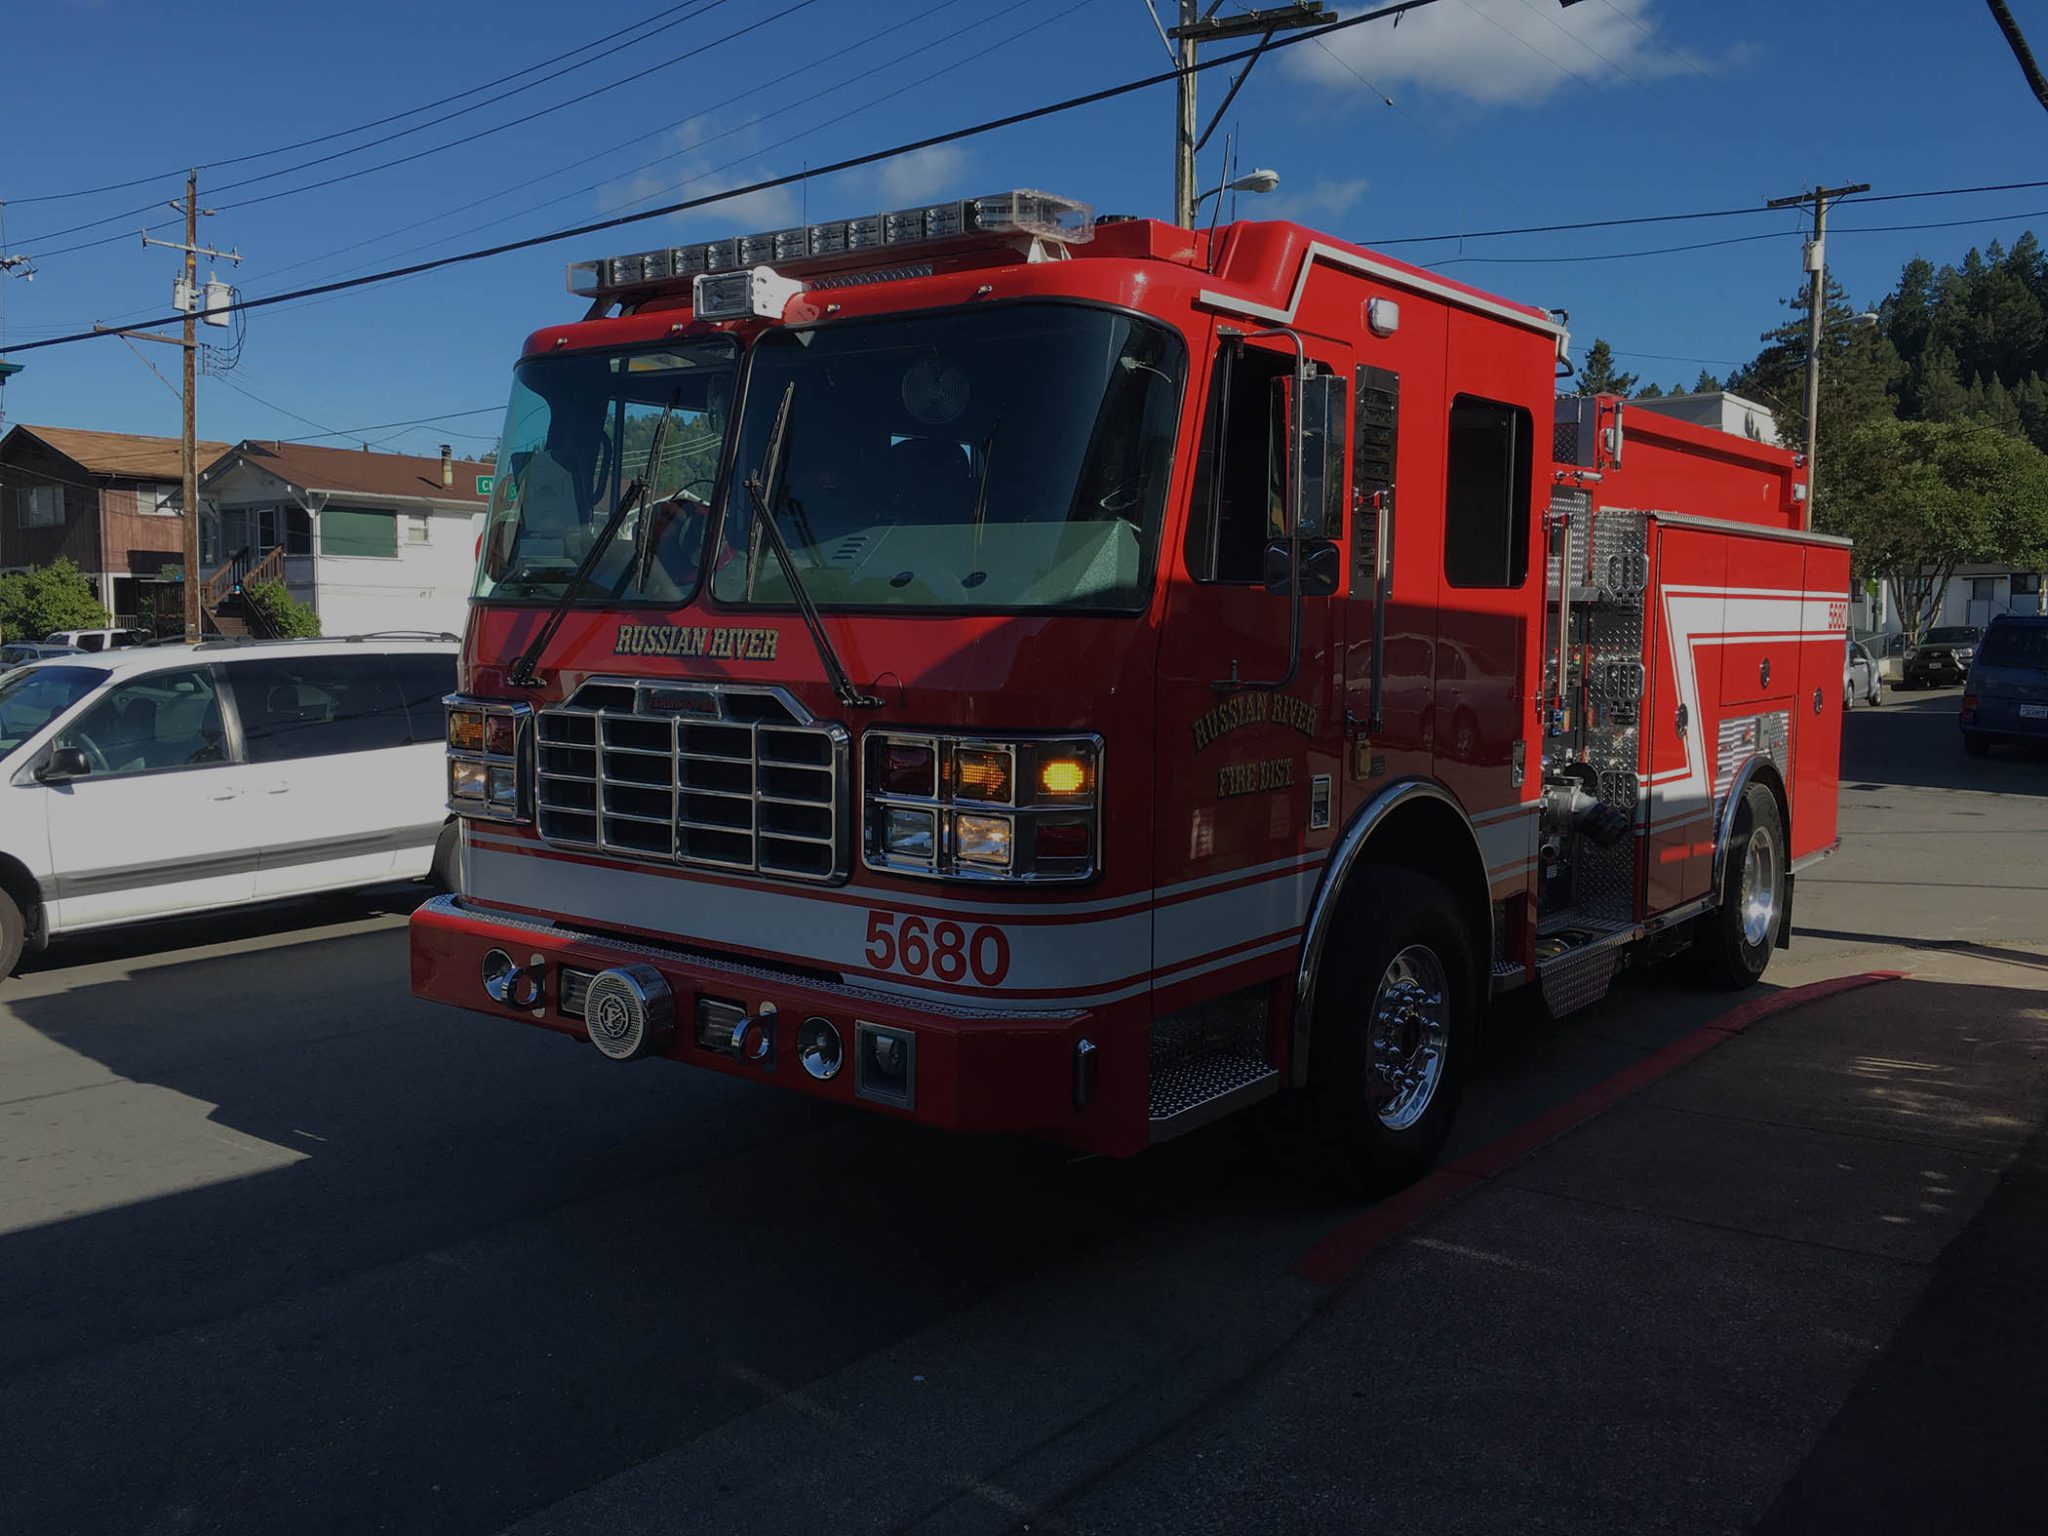 BLS 800 Rescue Ambulance - California Fire Prevention